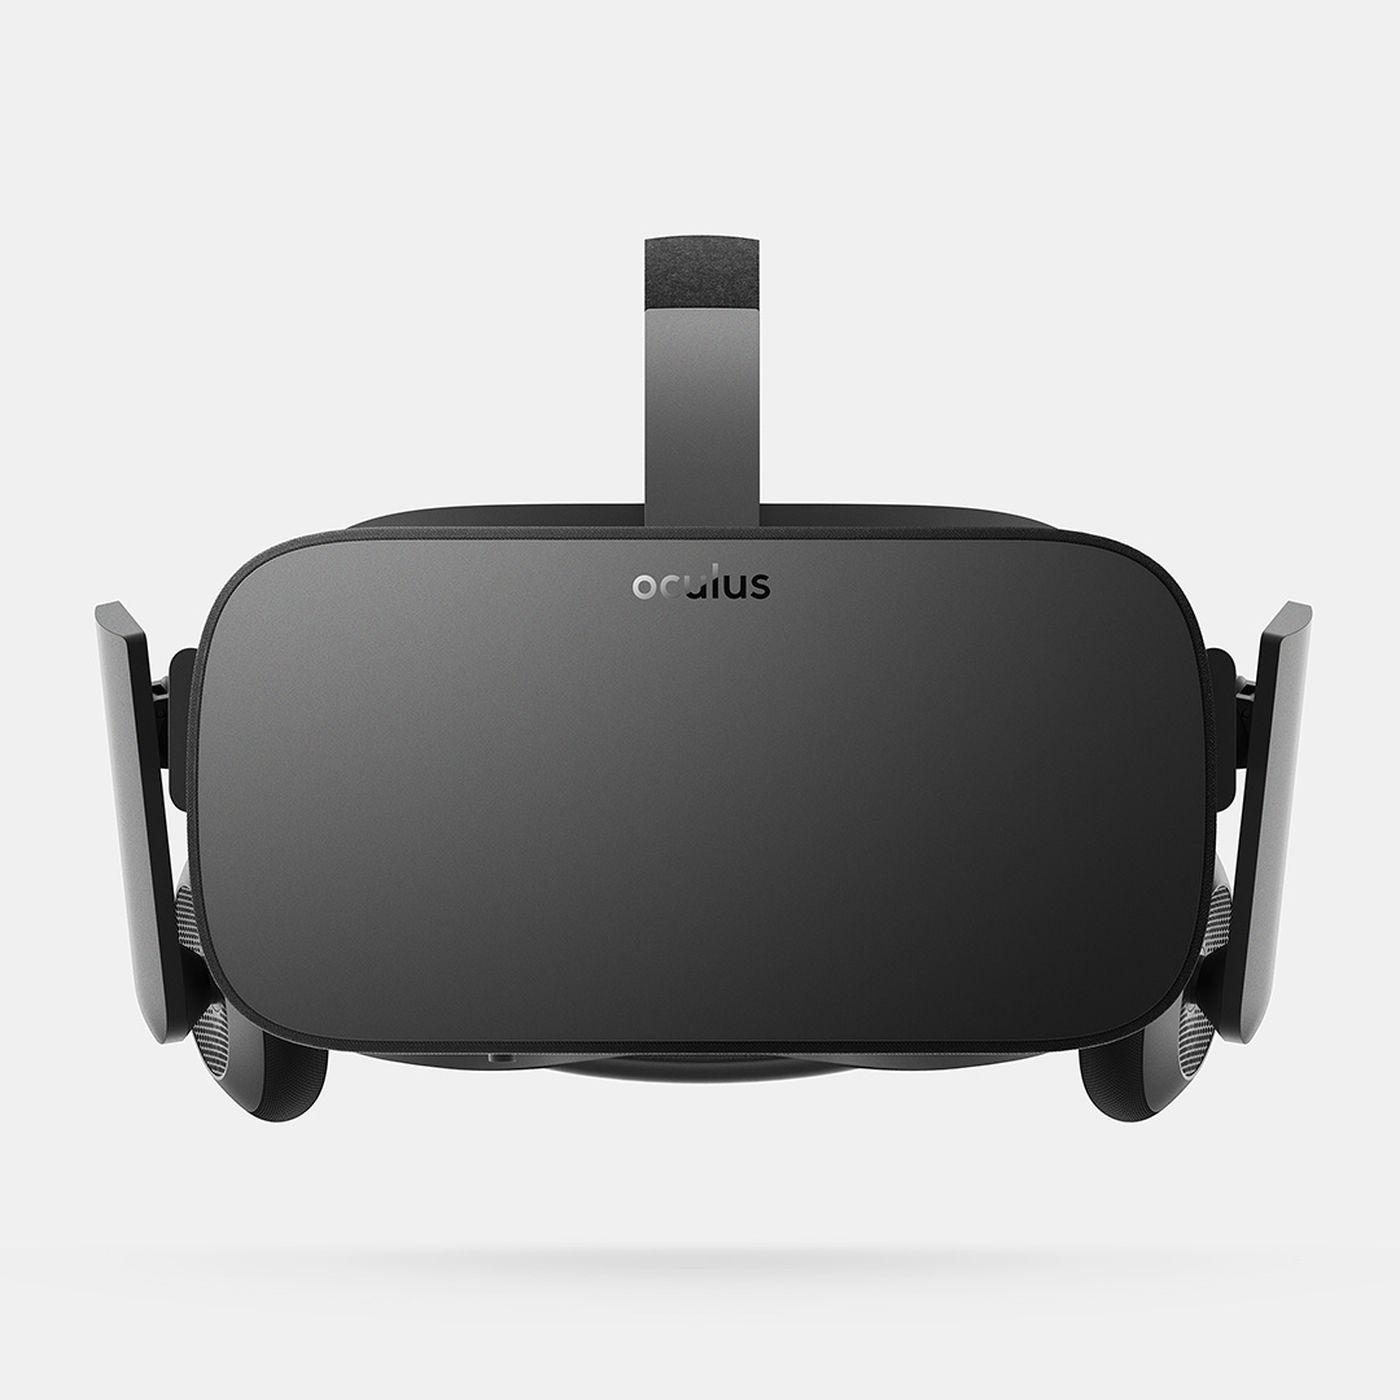 vækstdvale Hemmelighed bekræft venligst Oculus Rift price set at $599, shipping in March (update) - Polygon